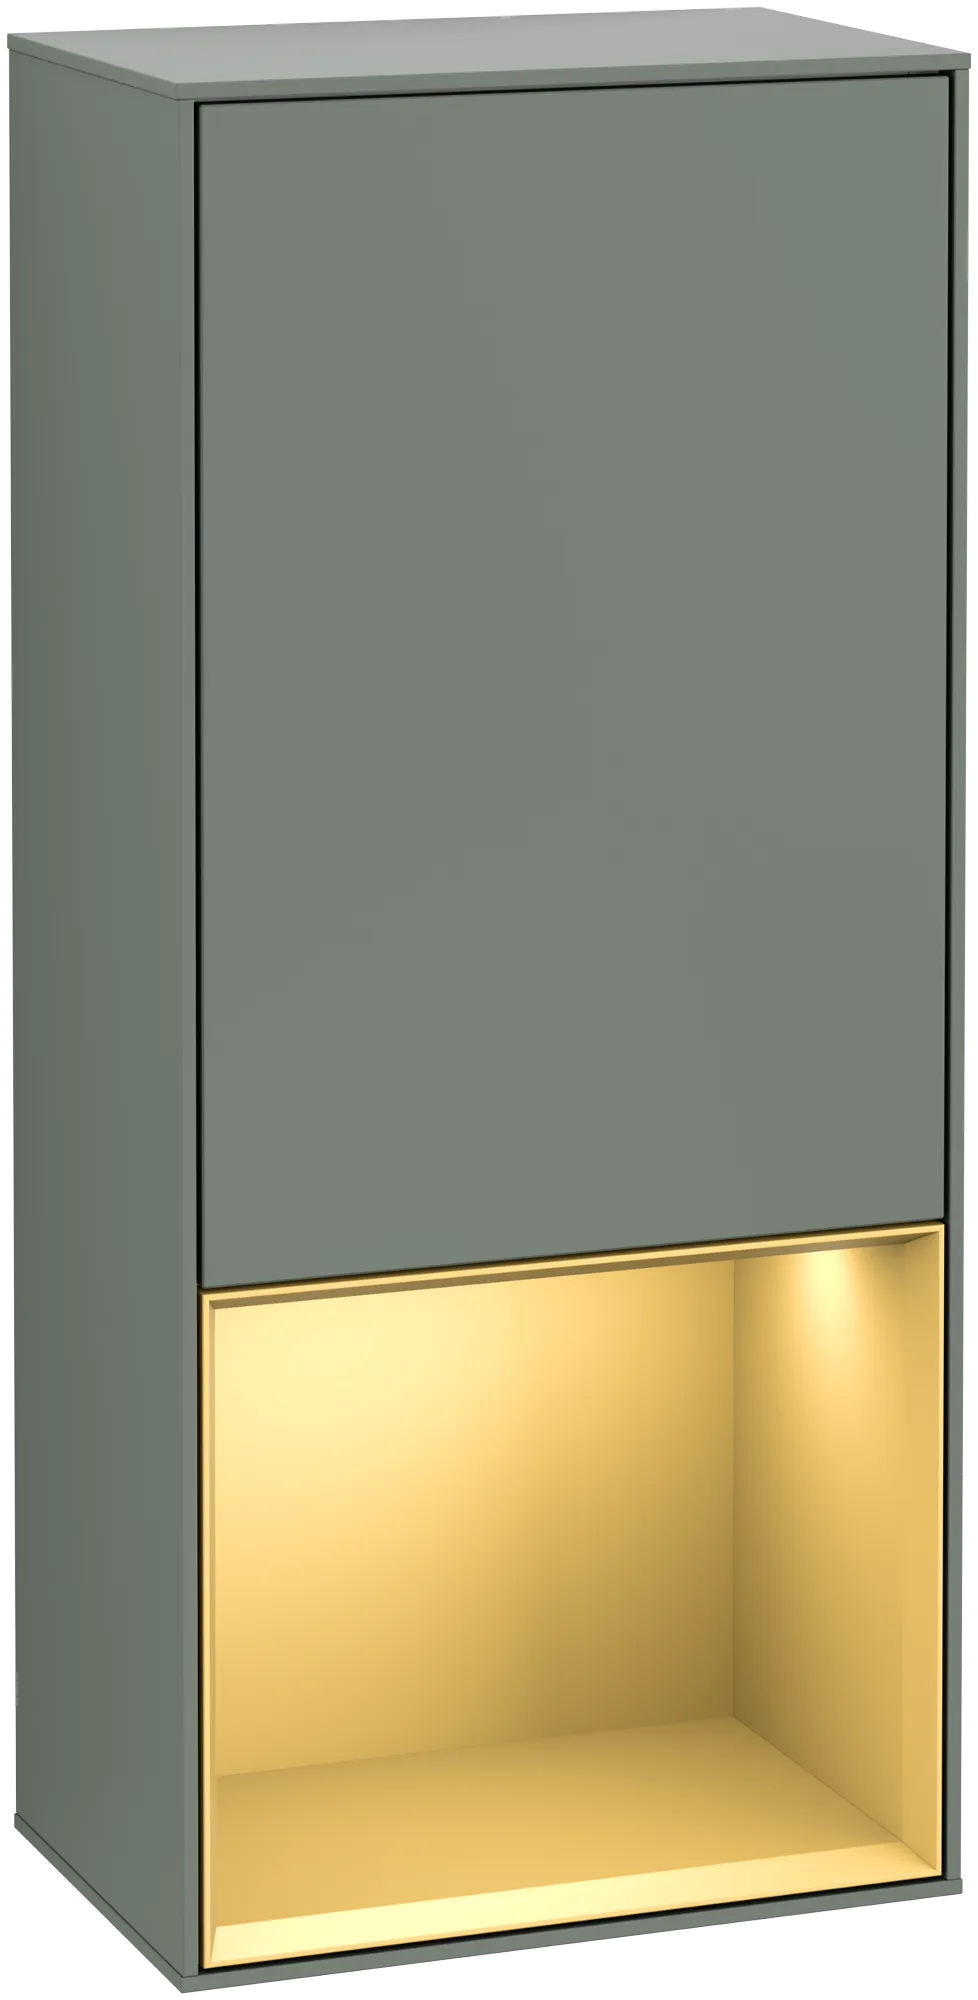 Bild von VILLEROY BOCH Finion Seitenschrank, mit Beleuchtung, 1 Tür, 418 x 936 x 270 mm, Olive Matt Lacquer / Gold Matt Lacquer #G540HFGM